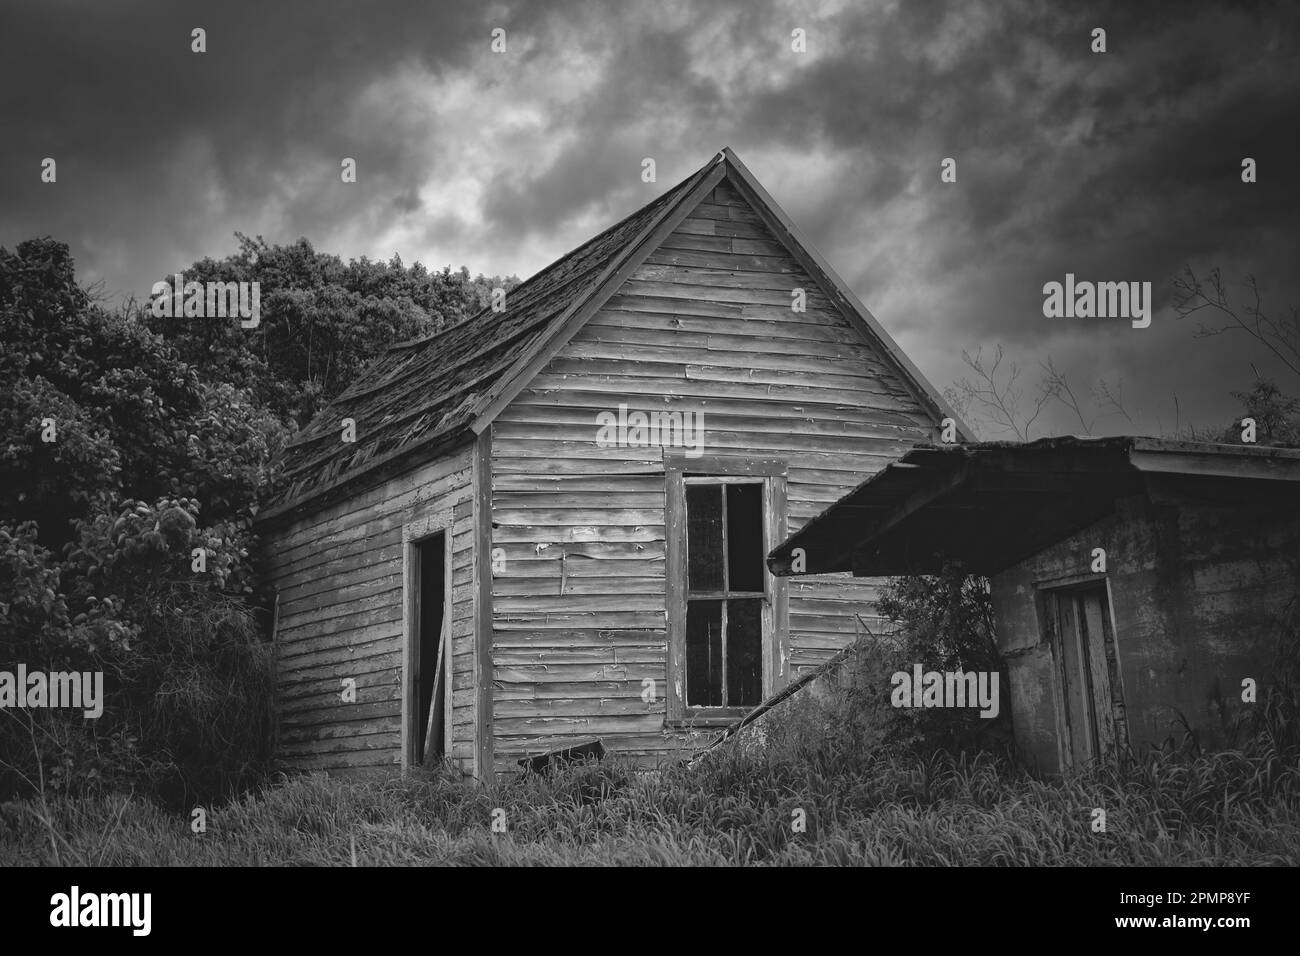 Imagen en blanco y negro de una casa vieja y espeluznante abandonada bajo nubes meteorológicas amenazantes en el este de Washington, EE.UU Foto de stock